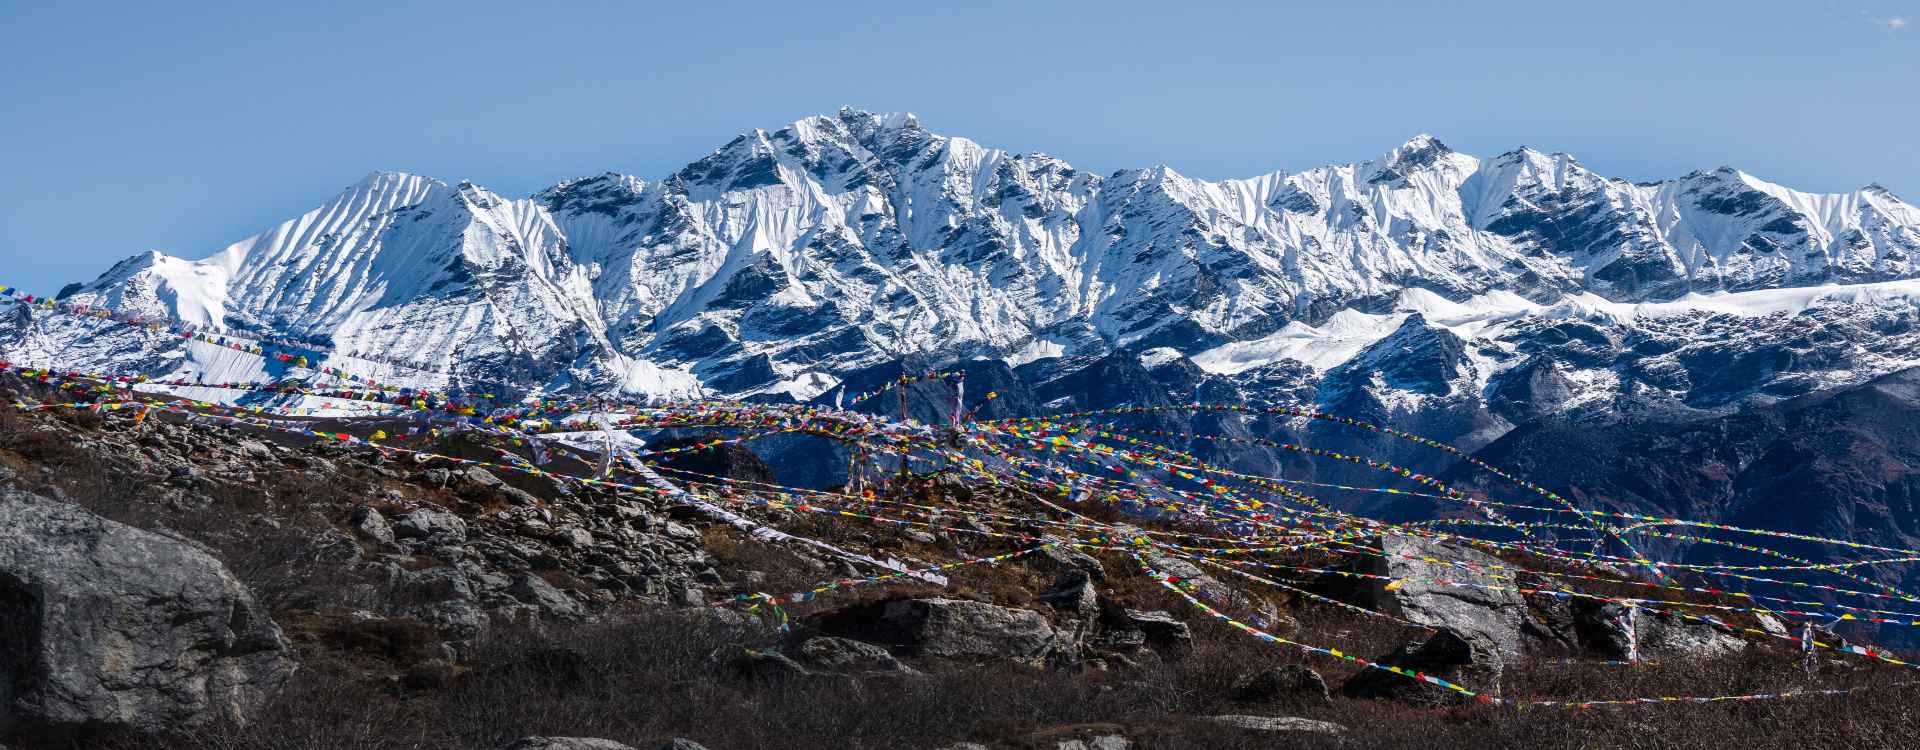 Lantang Valley Trek with Ganjala Pass